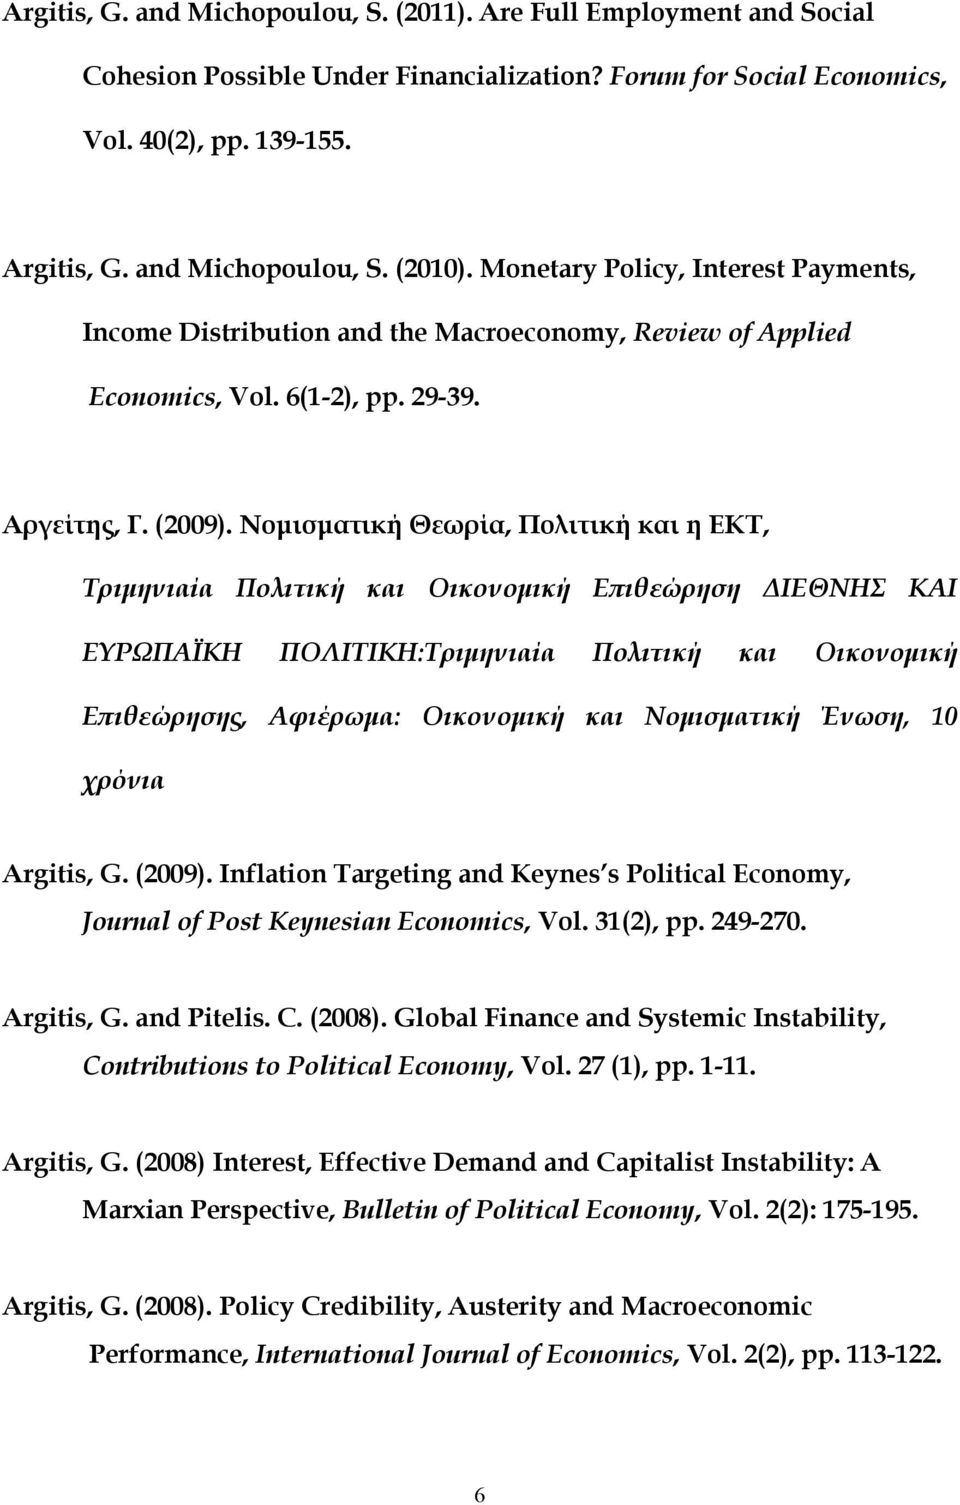 Νομισματική Θεωρία, Πολιτική και η ΕΚΤ, Τριμηνιαία Πολιτική και Οικονομική Επιθεώρηση ΔΙΕΘΝΗΣ ΚΑΙ ΕΥΡΩΠΑΪΚΗ ΠΟΛΙΤΙΚΗ:Τριμηνιαία Πολιτική και Οικονομική Επιθεώρησης, Αφιέρωμα: Οικονομική και